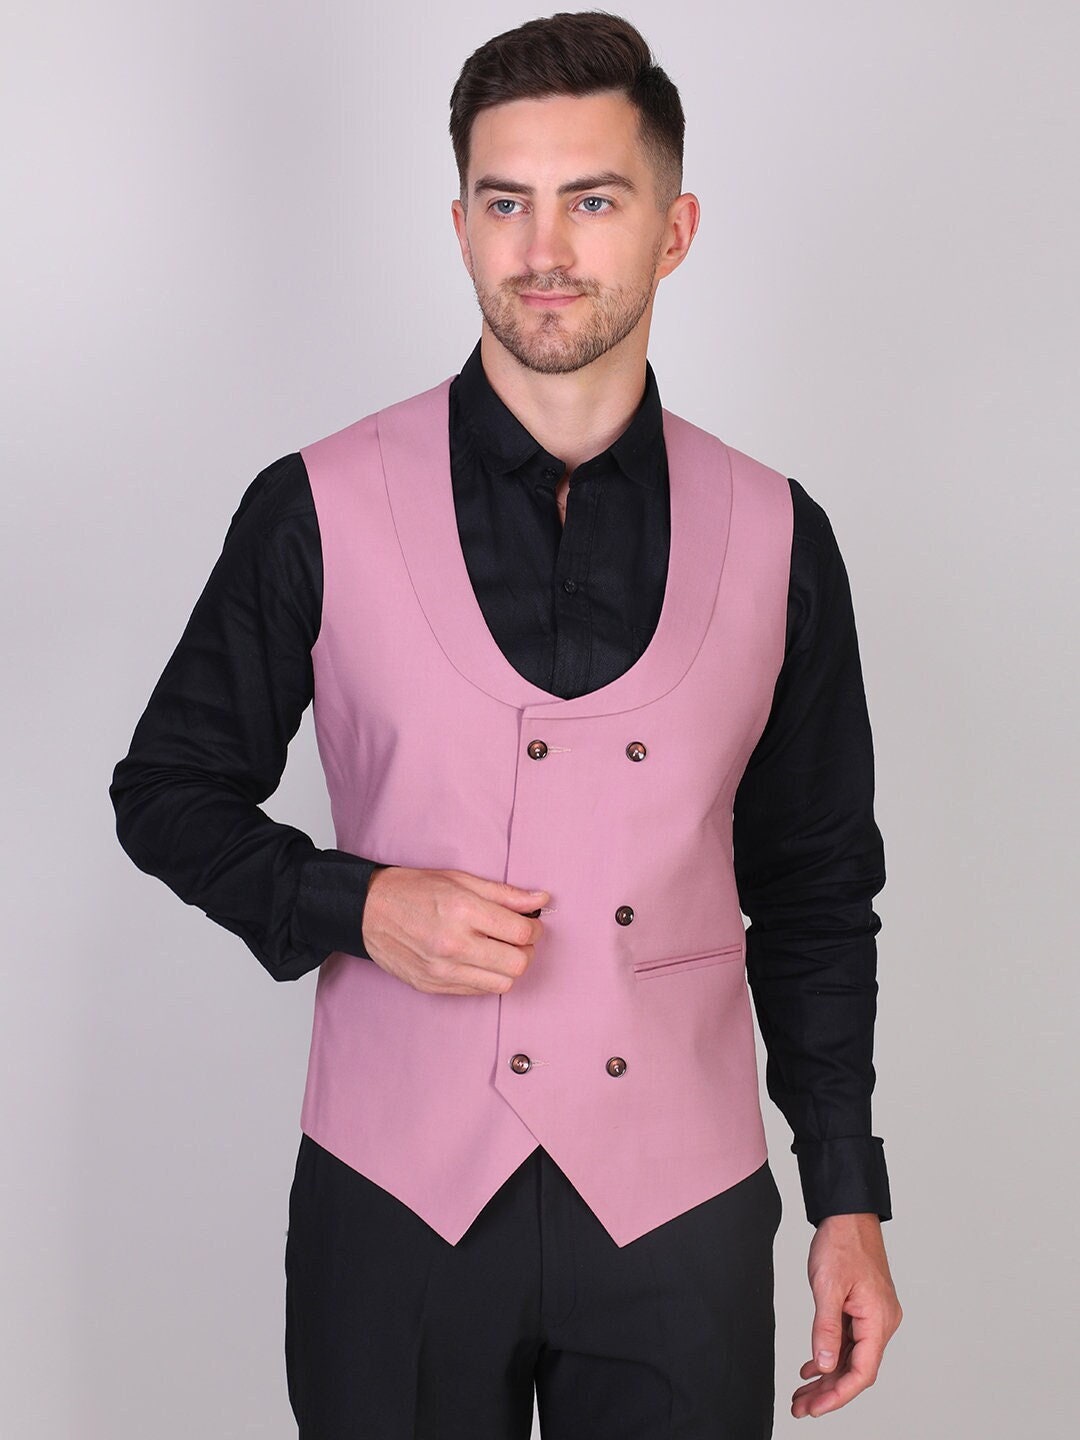 Elegante chaleco rosa para hombre para bodas, bailes, cenas, fiestas, traje  personalizado de 2 piezas para novios y padrinos de boda -  España